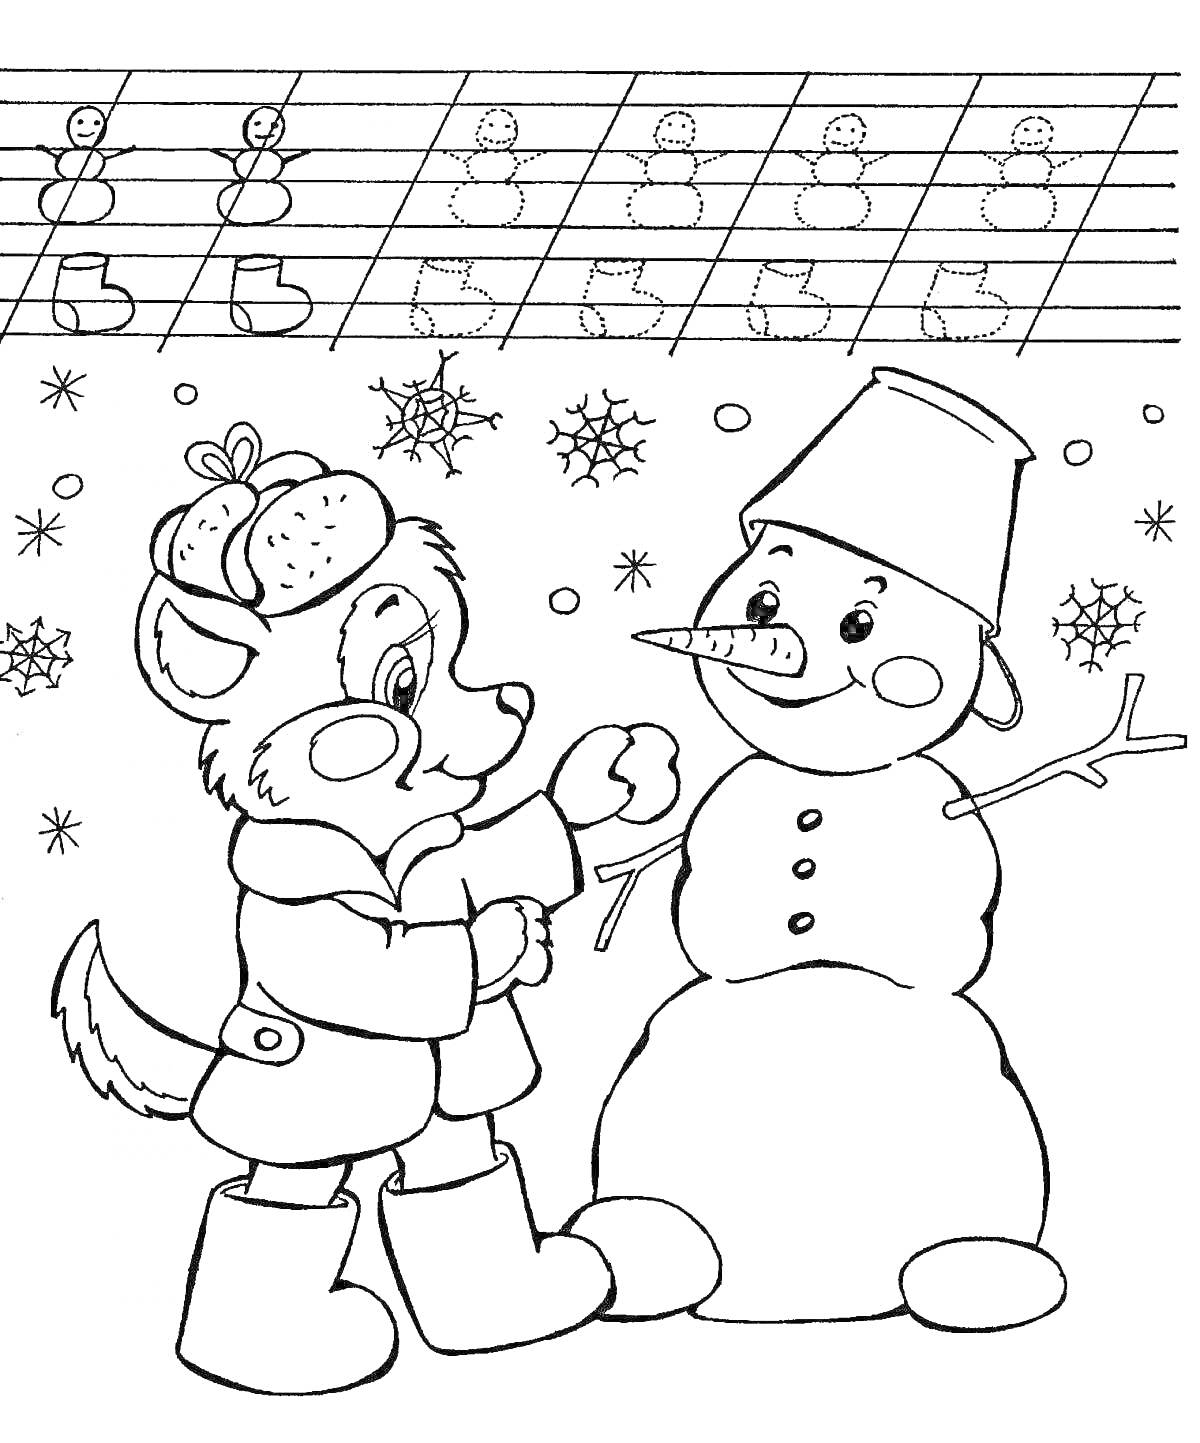 Раскраска Лисёнок и снеговик со снежинками и образцом букв 